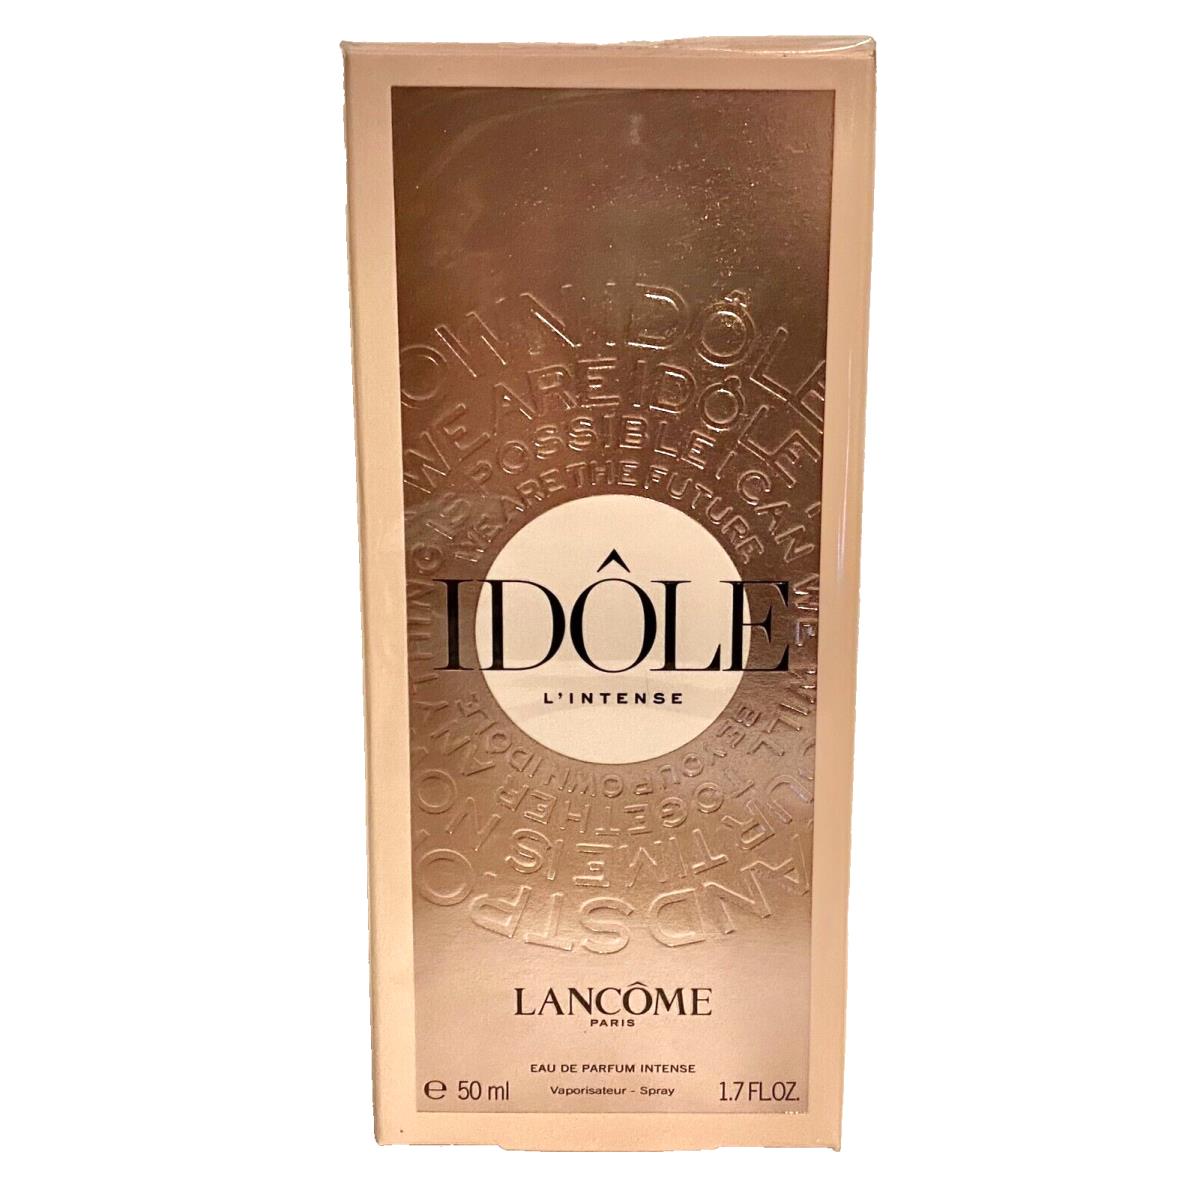 Lancome Idole L` Intense Spray Eau De Parfum Intense 1.7 oz/50 ml